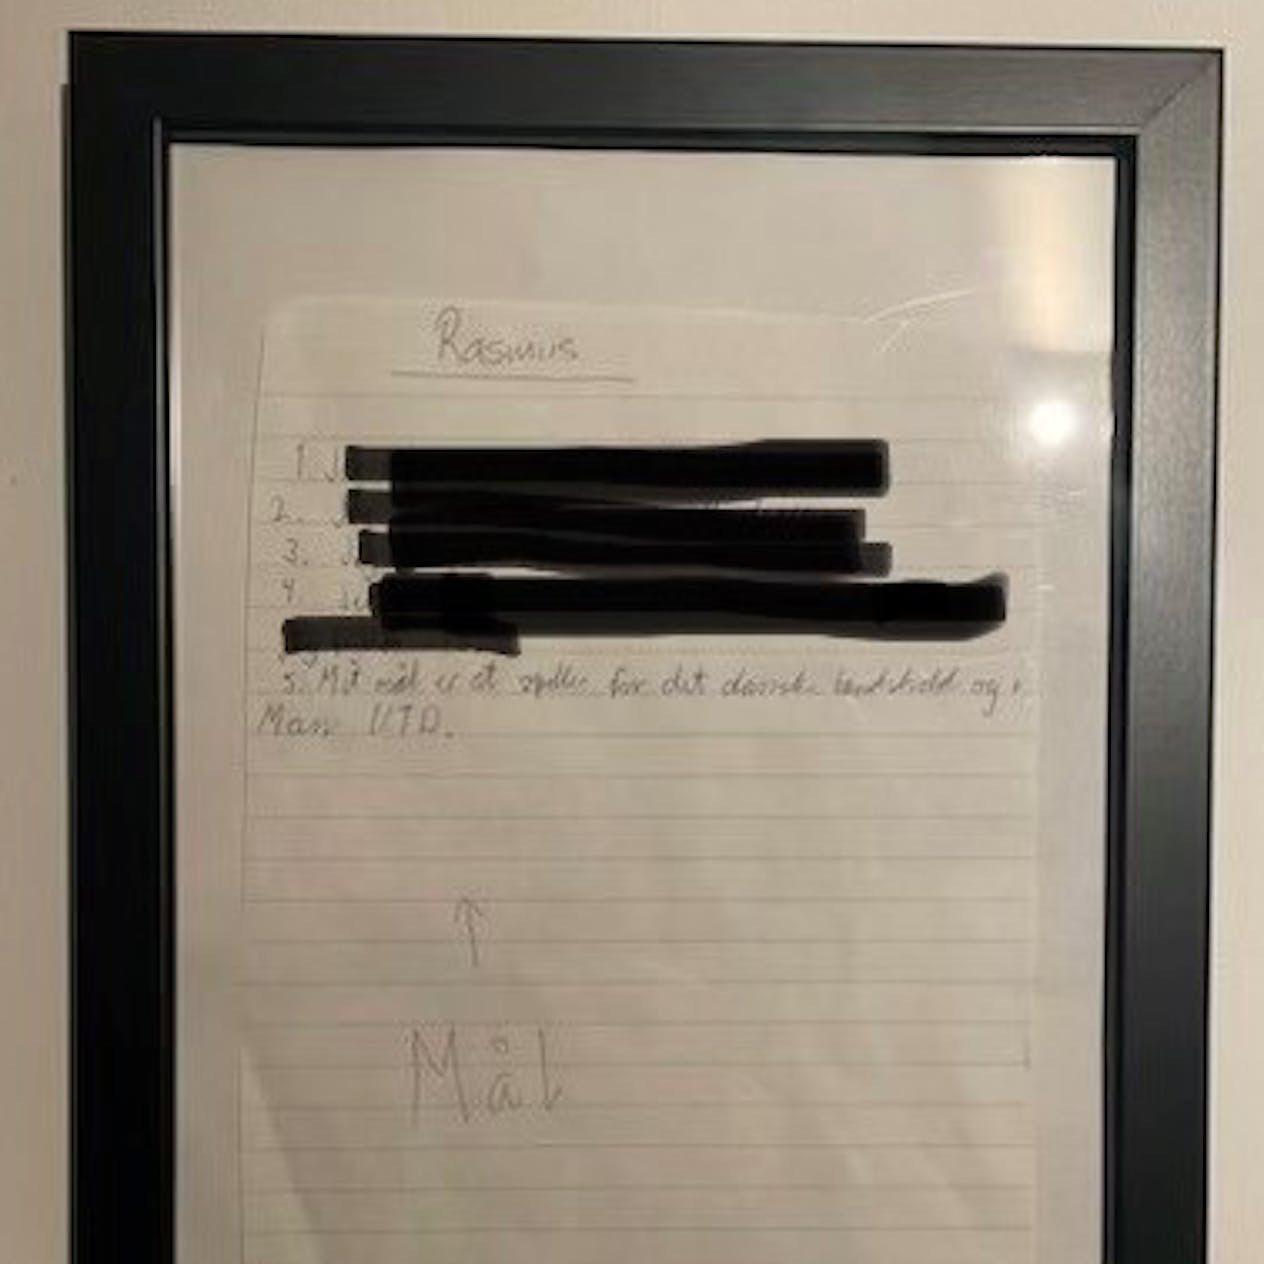 这是曼联中锋霍伊伦在10岁时写下的心愿清单

他的前四条愿望我们是看不到了，不过